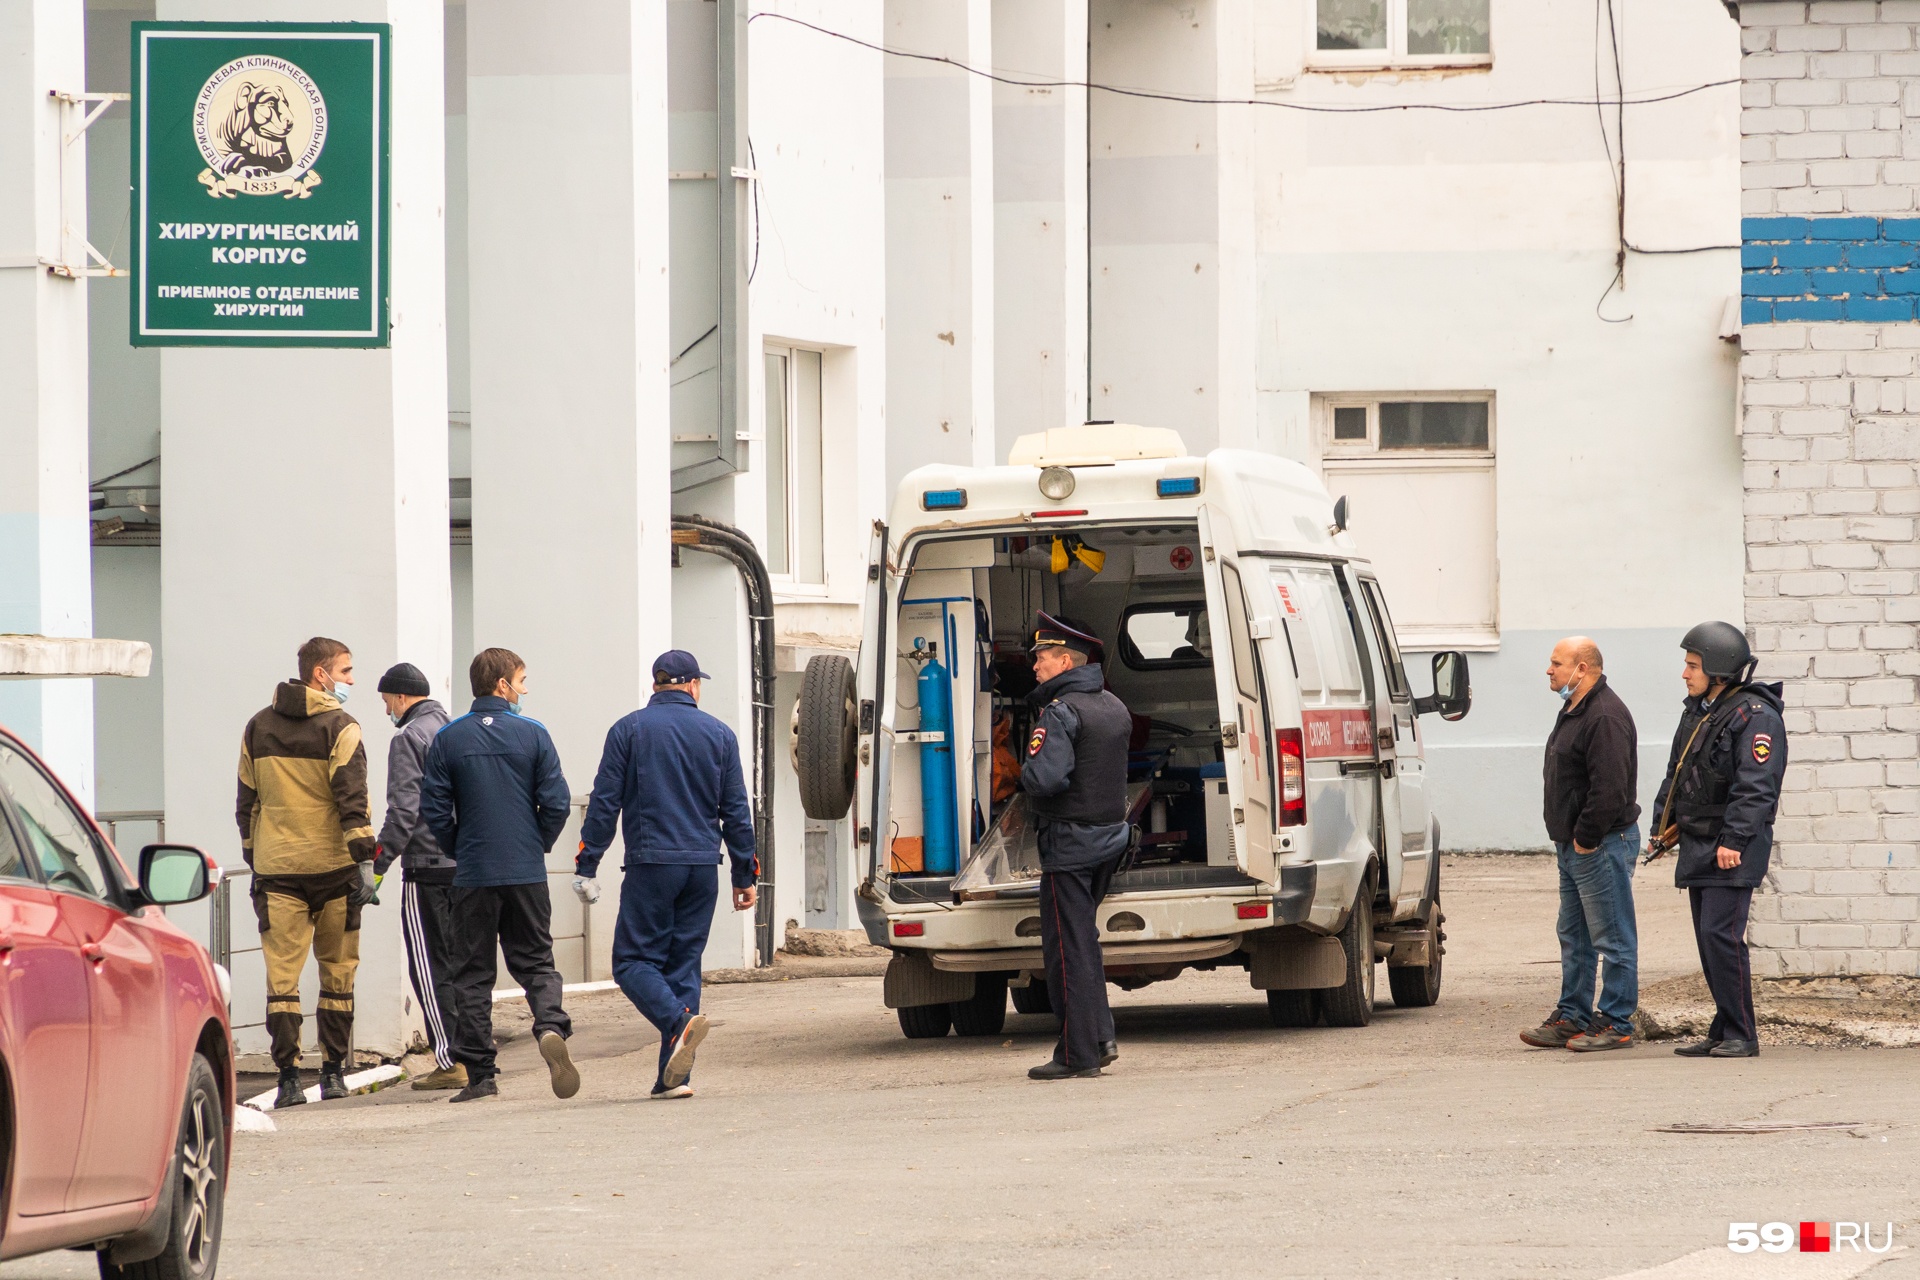 Раненых пациентов доставляли в Пермскую краевую клиническую больницу. Это фото сделано у хирургического корпуса больницы